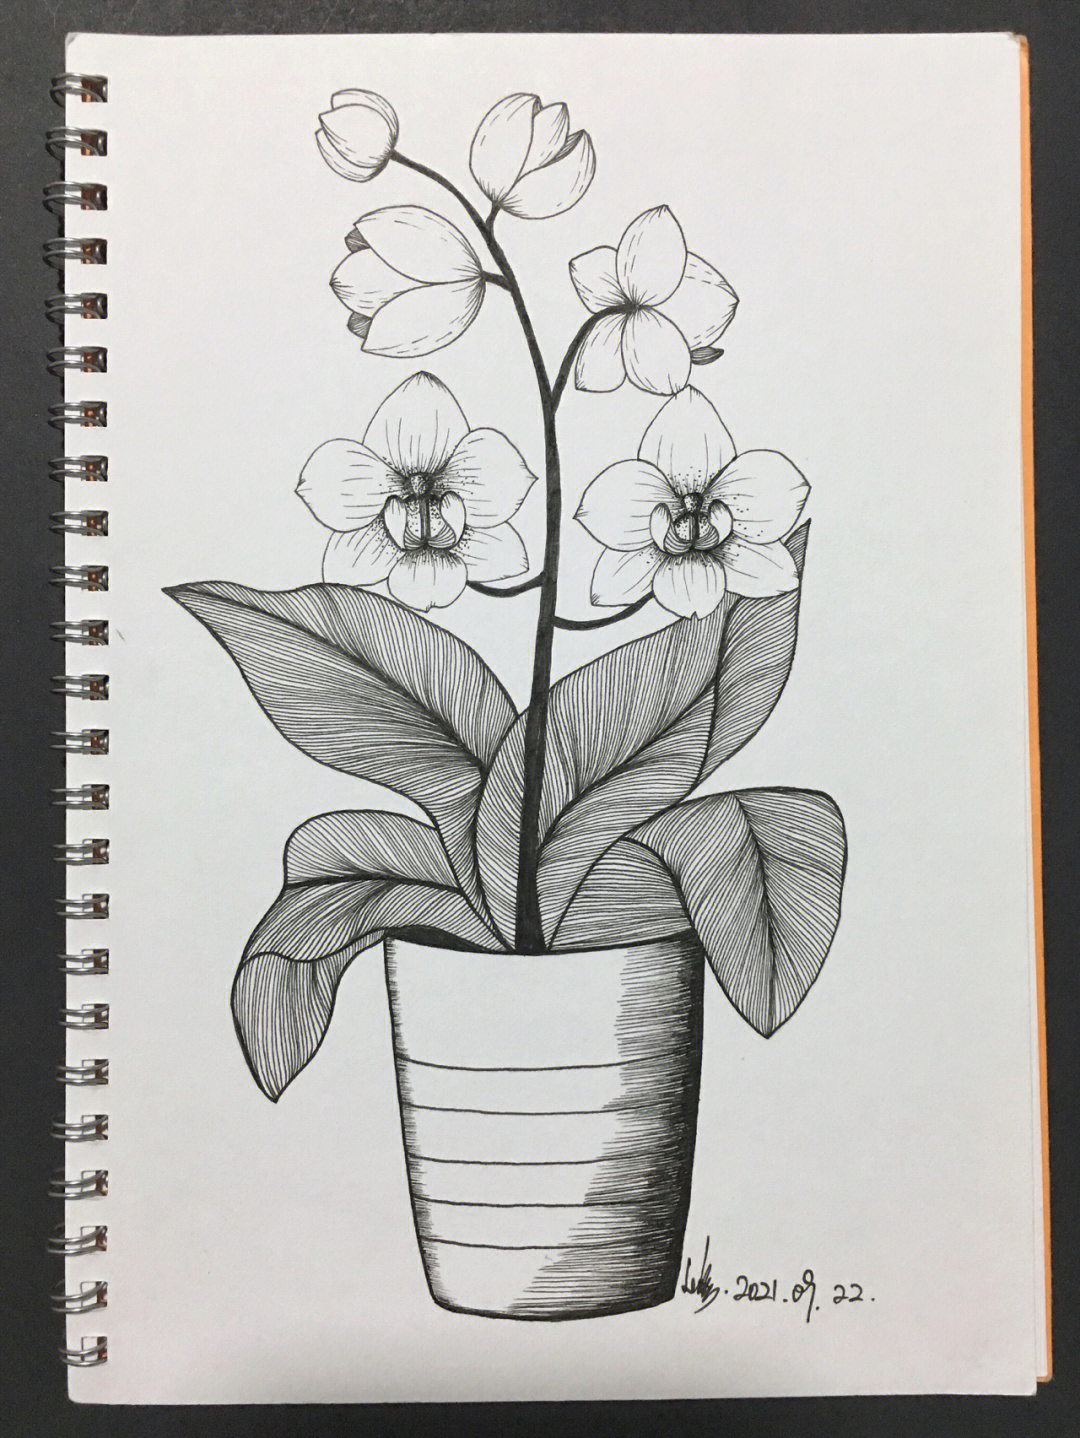 用线描的方法画植物图片